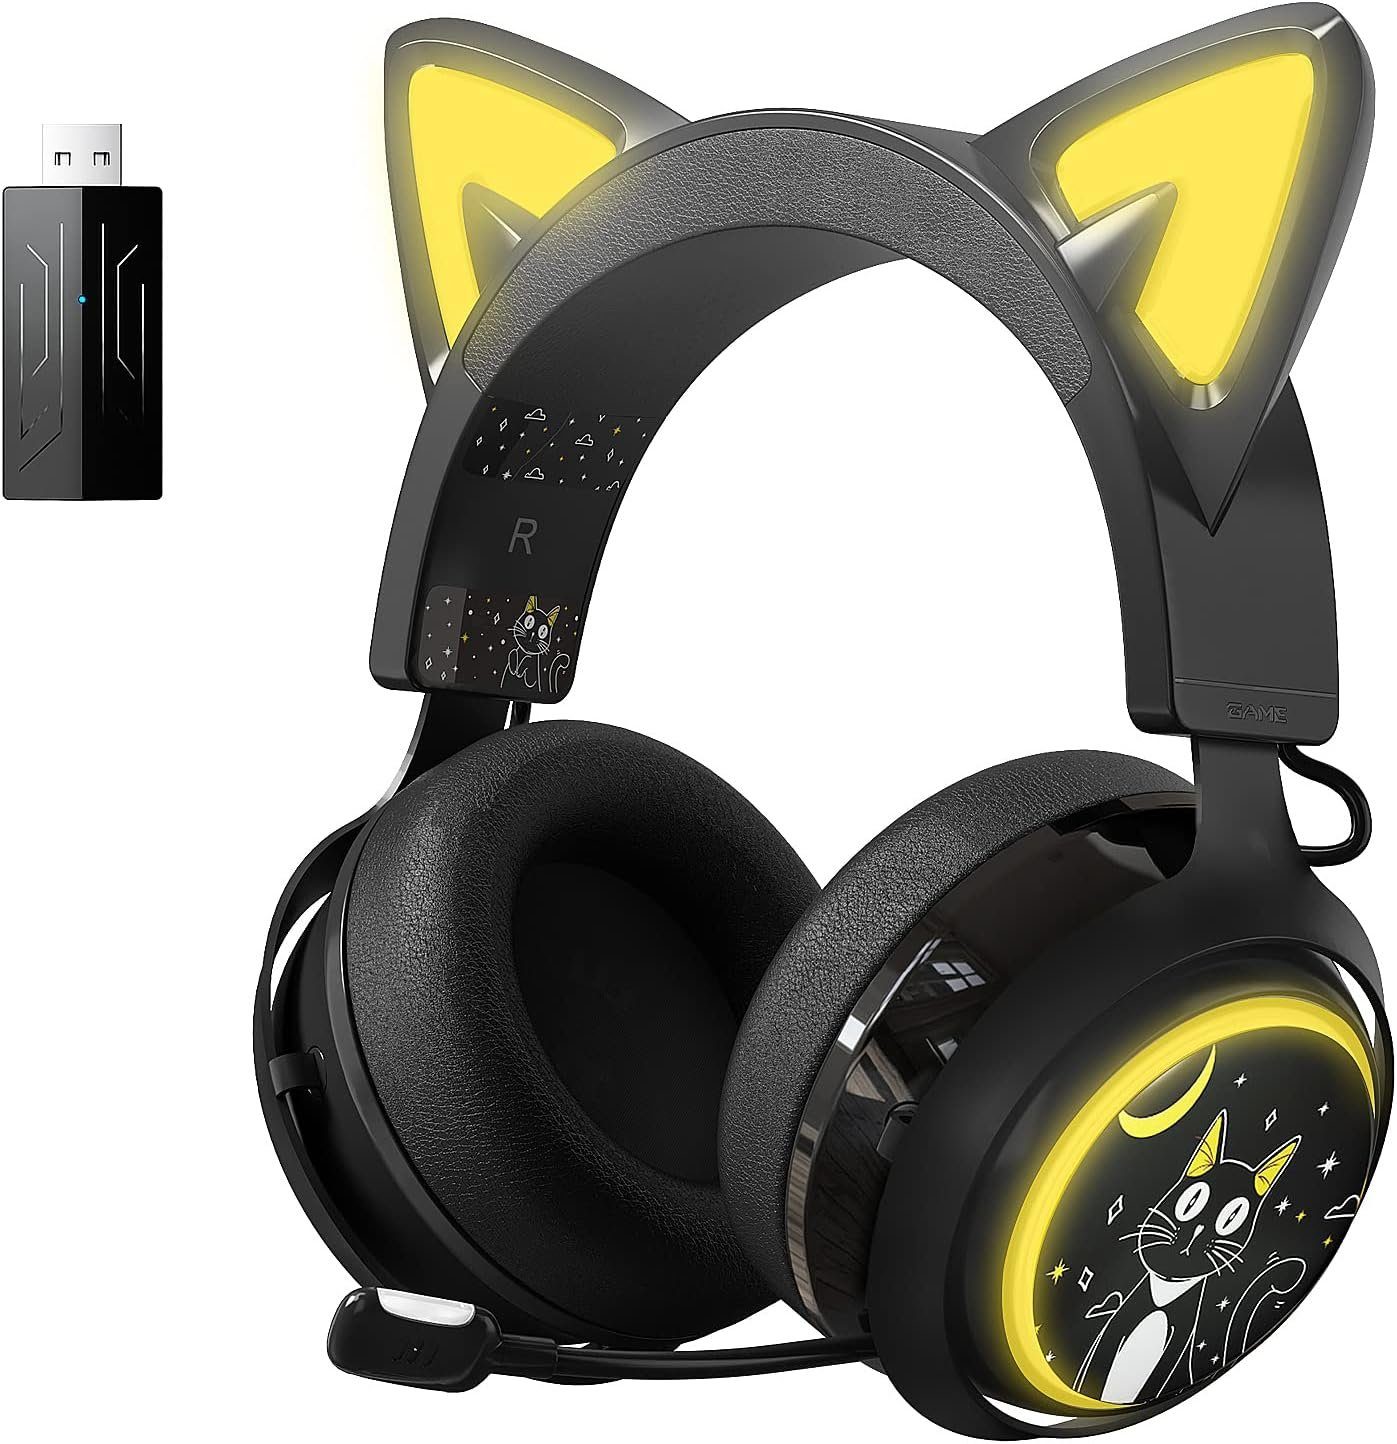 Mikrofon Gaming-Headset Surround (Eingebautes Gaming-Headset mit Spielens. während Cat-Ears) 7.1 und Sound für "Drahtloses klare Rauschunterdrückung Sprachkommunikation des , Somikon mit